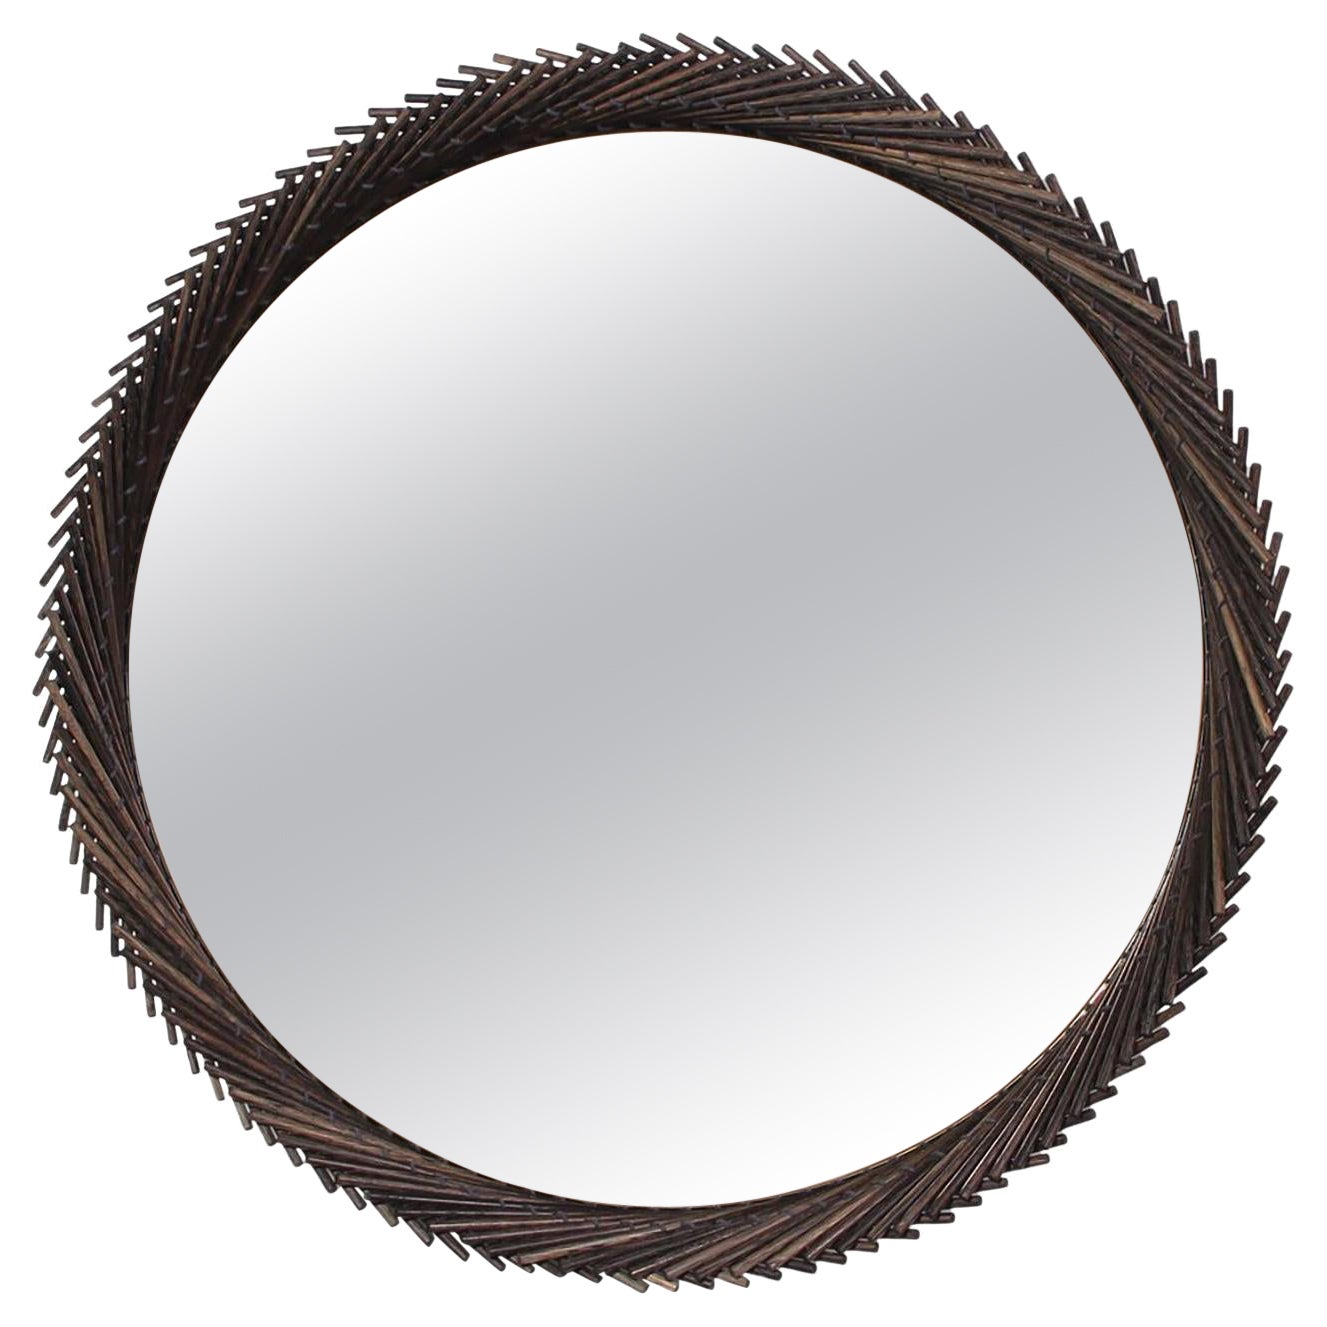 Mooda Round Mirror 36 / Oxidized Oak Wood, Clear Mirror by INDO-